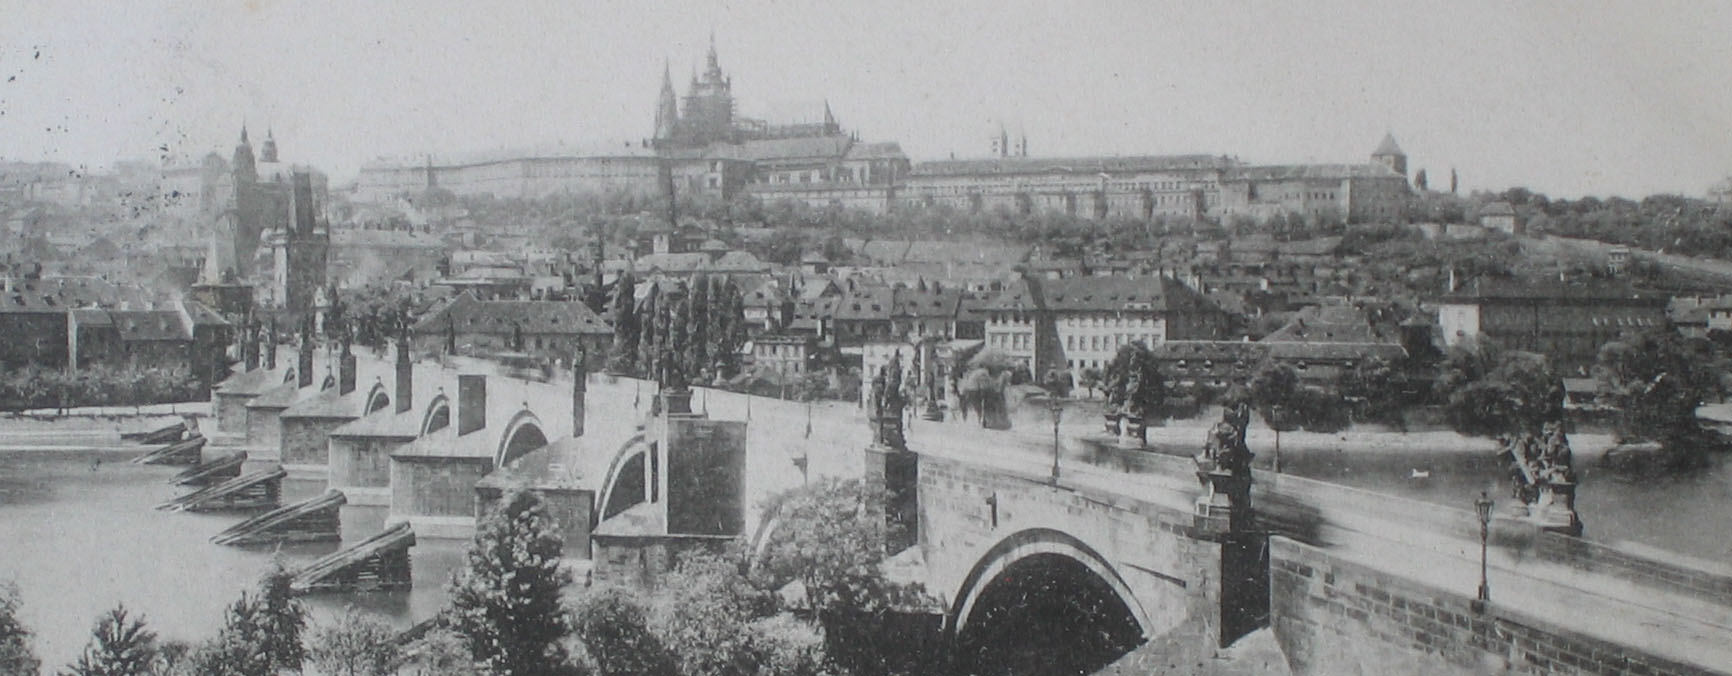 Stadtansicht von Prag, ca. 1899